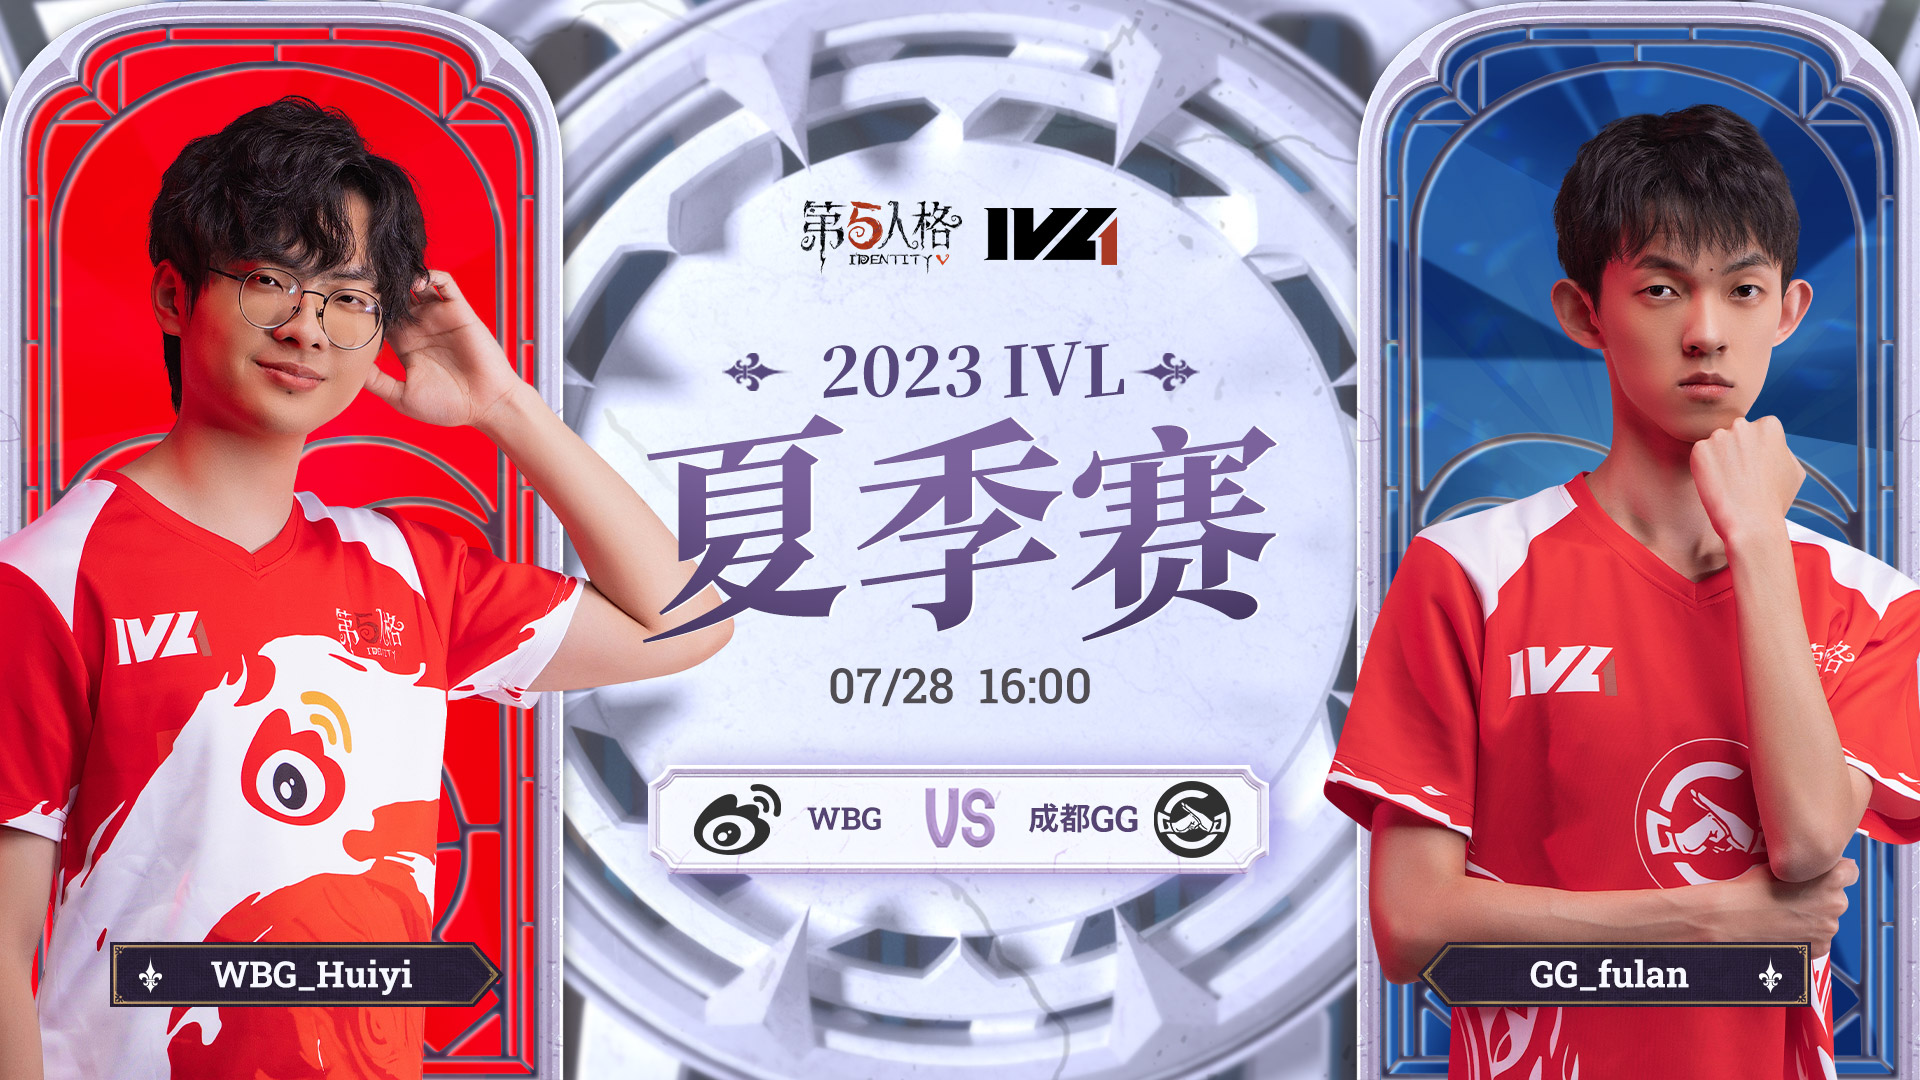 【2023IVL】夏季赛W8D1录像 WBG vs 成都GG